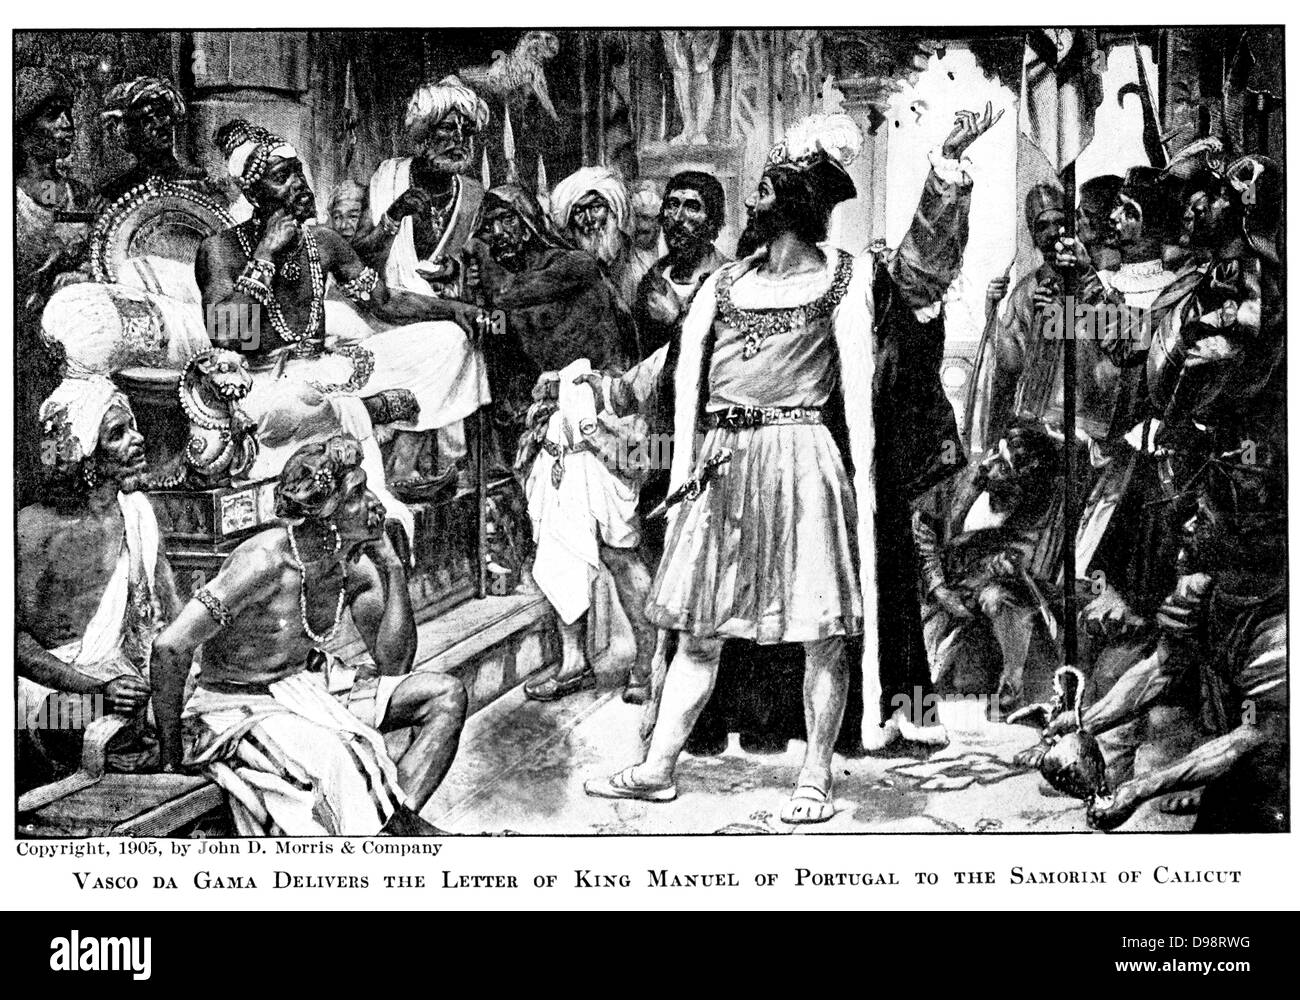 Vasco da Gama offre la lettre du Roi Manuel du Portugal à l'Samorim de Calicut Banque D'Images